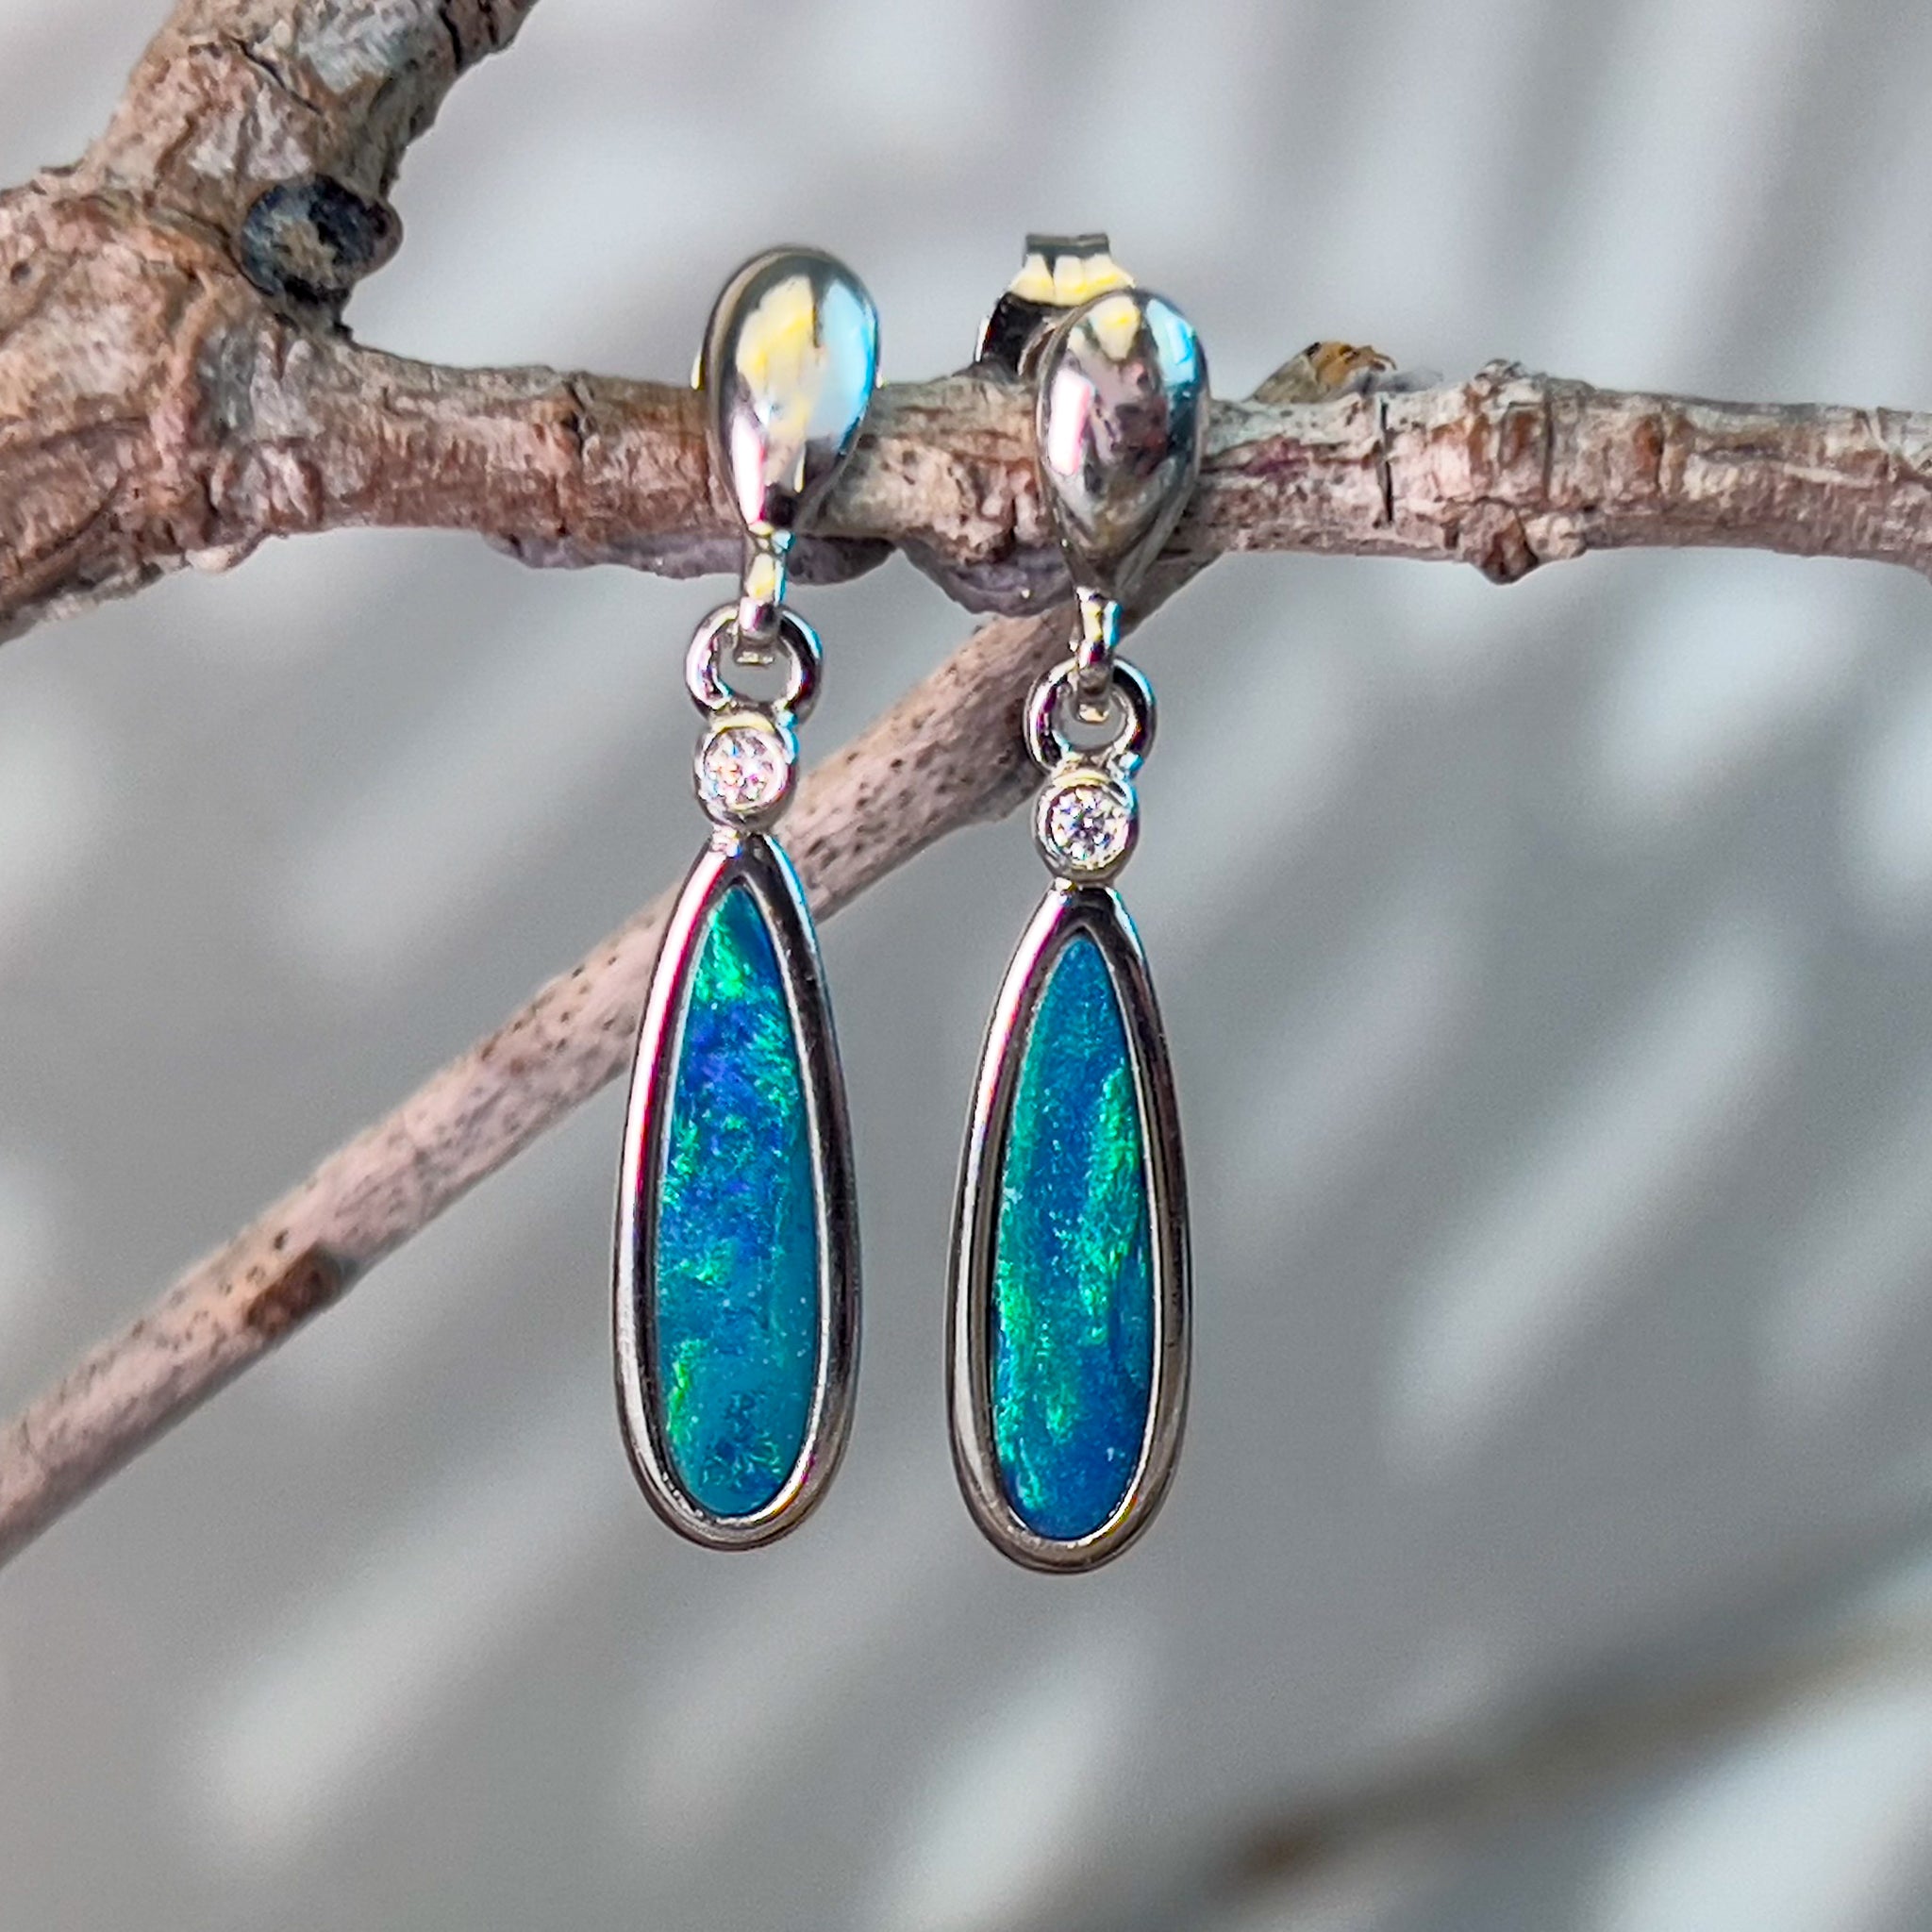 Sterling Silver pearshape Opal doublets dangling earrings - Masterpiece Jewellery Opal & Gems Sydney Australia | Online Shop